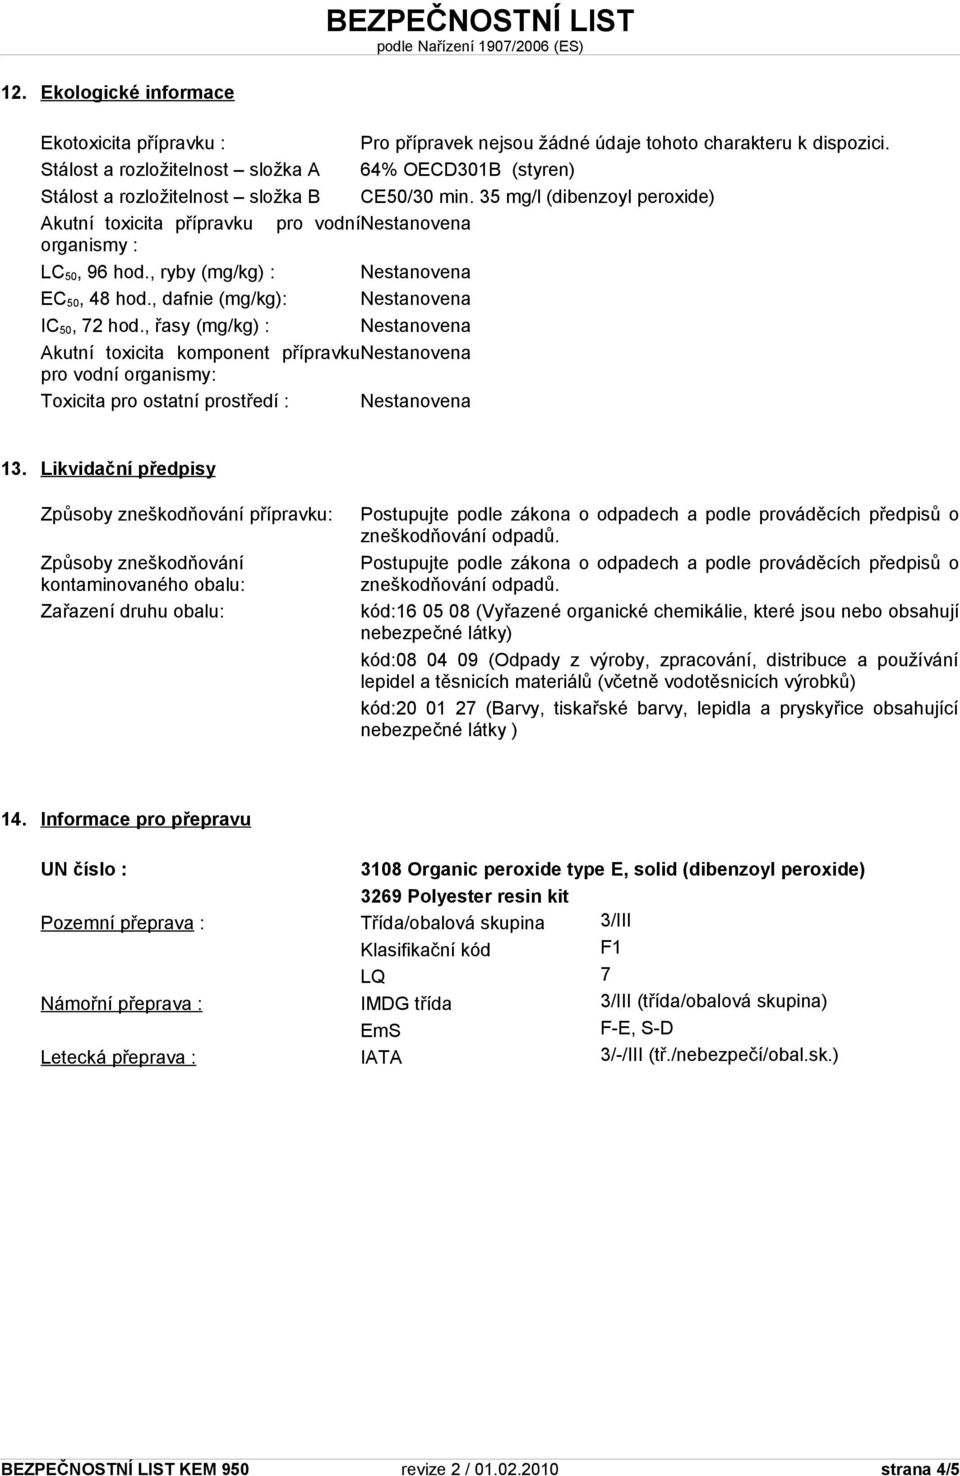 35 mg/l (dibenzoyl peroxide) Akutní toxicita přípravku pro vodní Nestanovena organismy : LC 50, 96 hod., ryby (mg/kg) : Nestanovena EC 50, 48 hod., dafnie (mg/kg): Nestanovena IC 50, 72 hod.